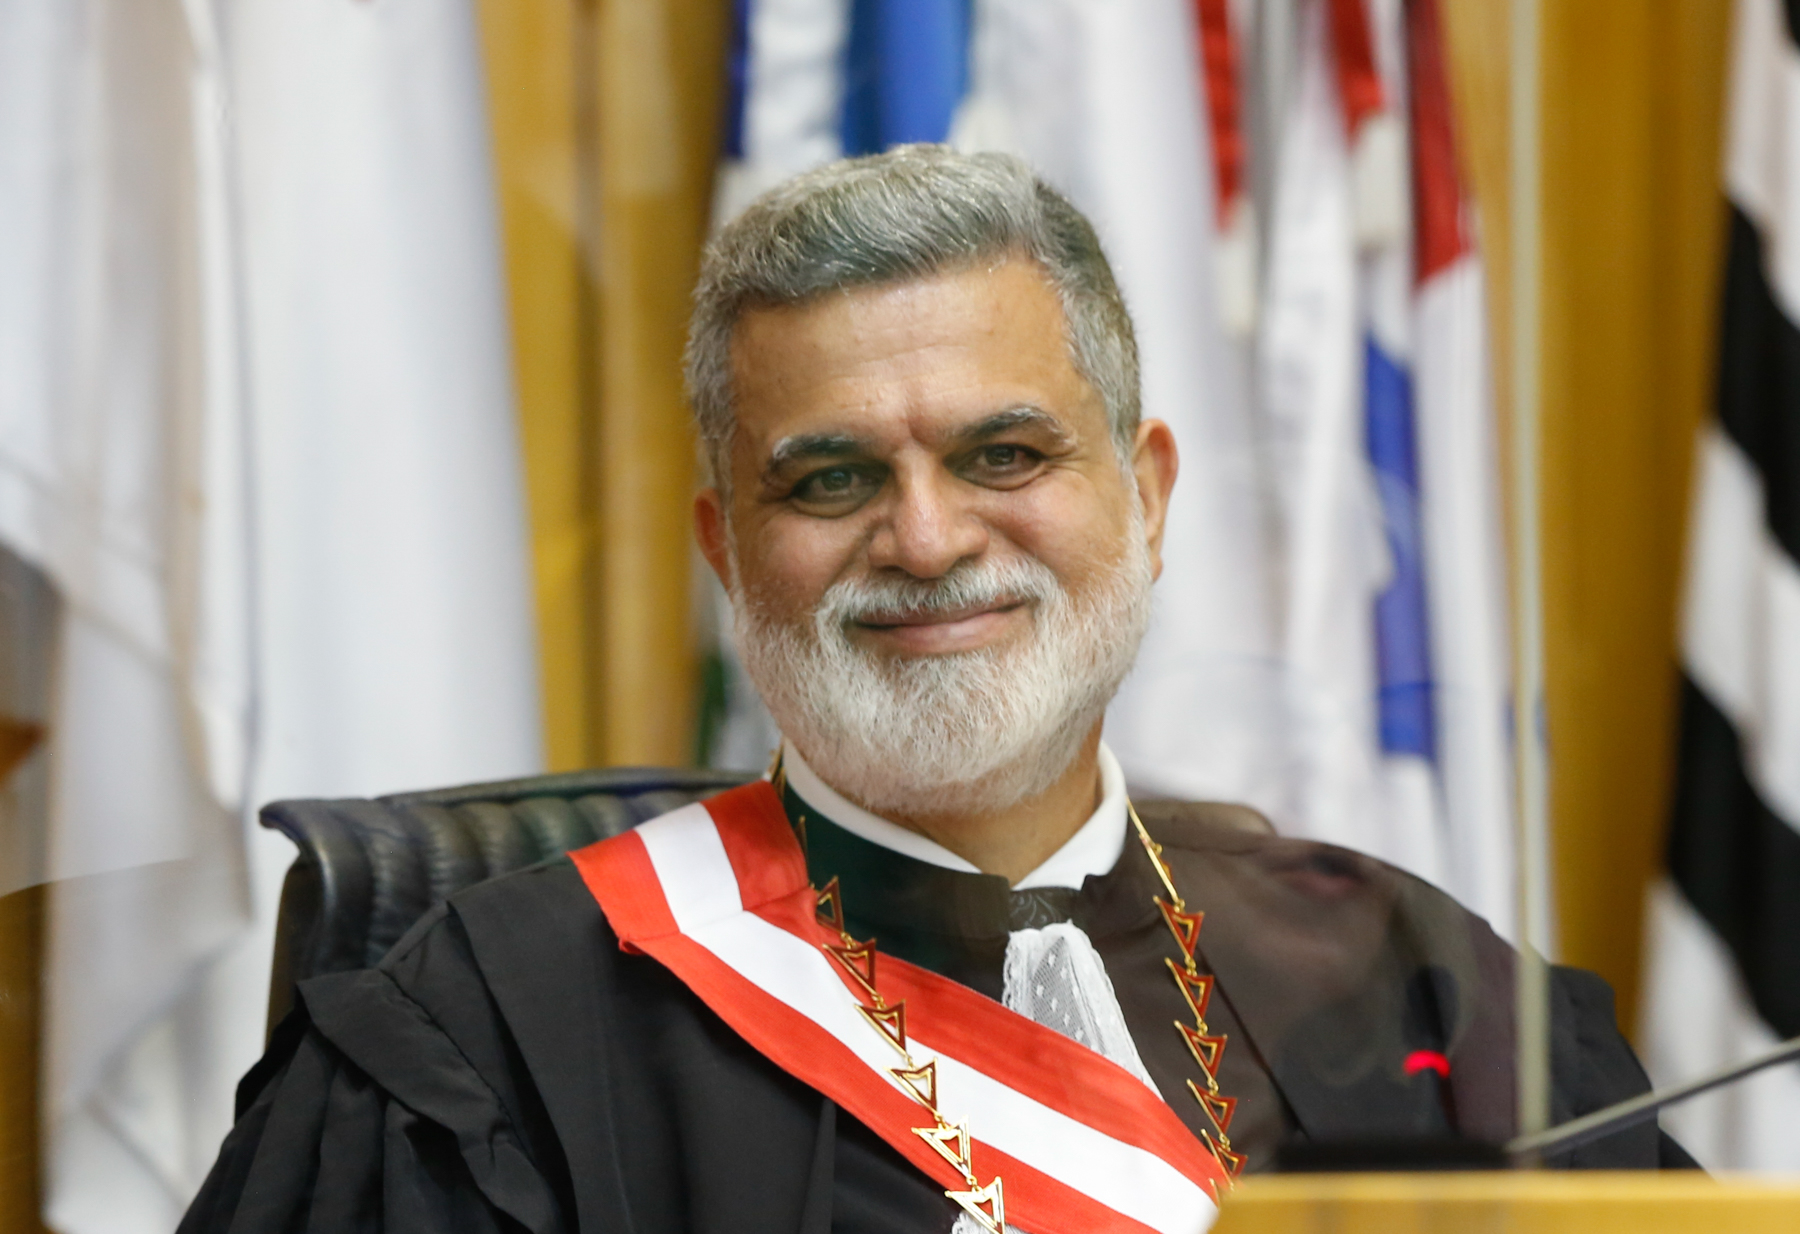 Gestão do ministro Lelio Bentes valoriza diversidade e reforça compromisso com justiça social